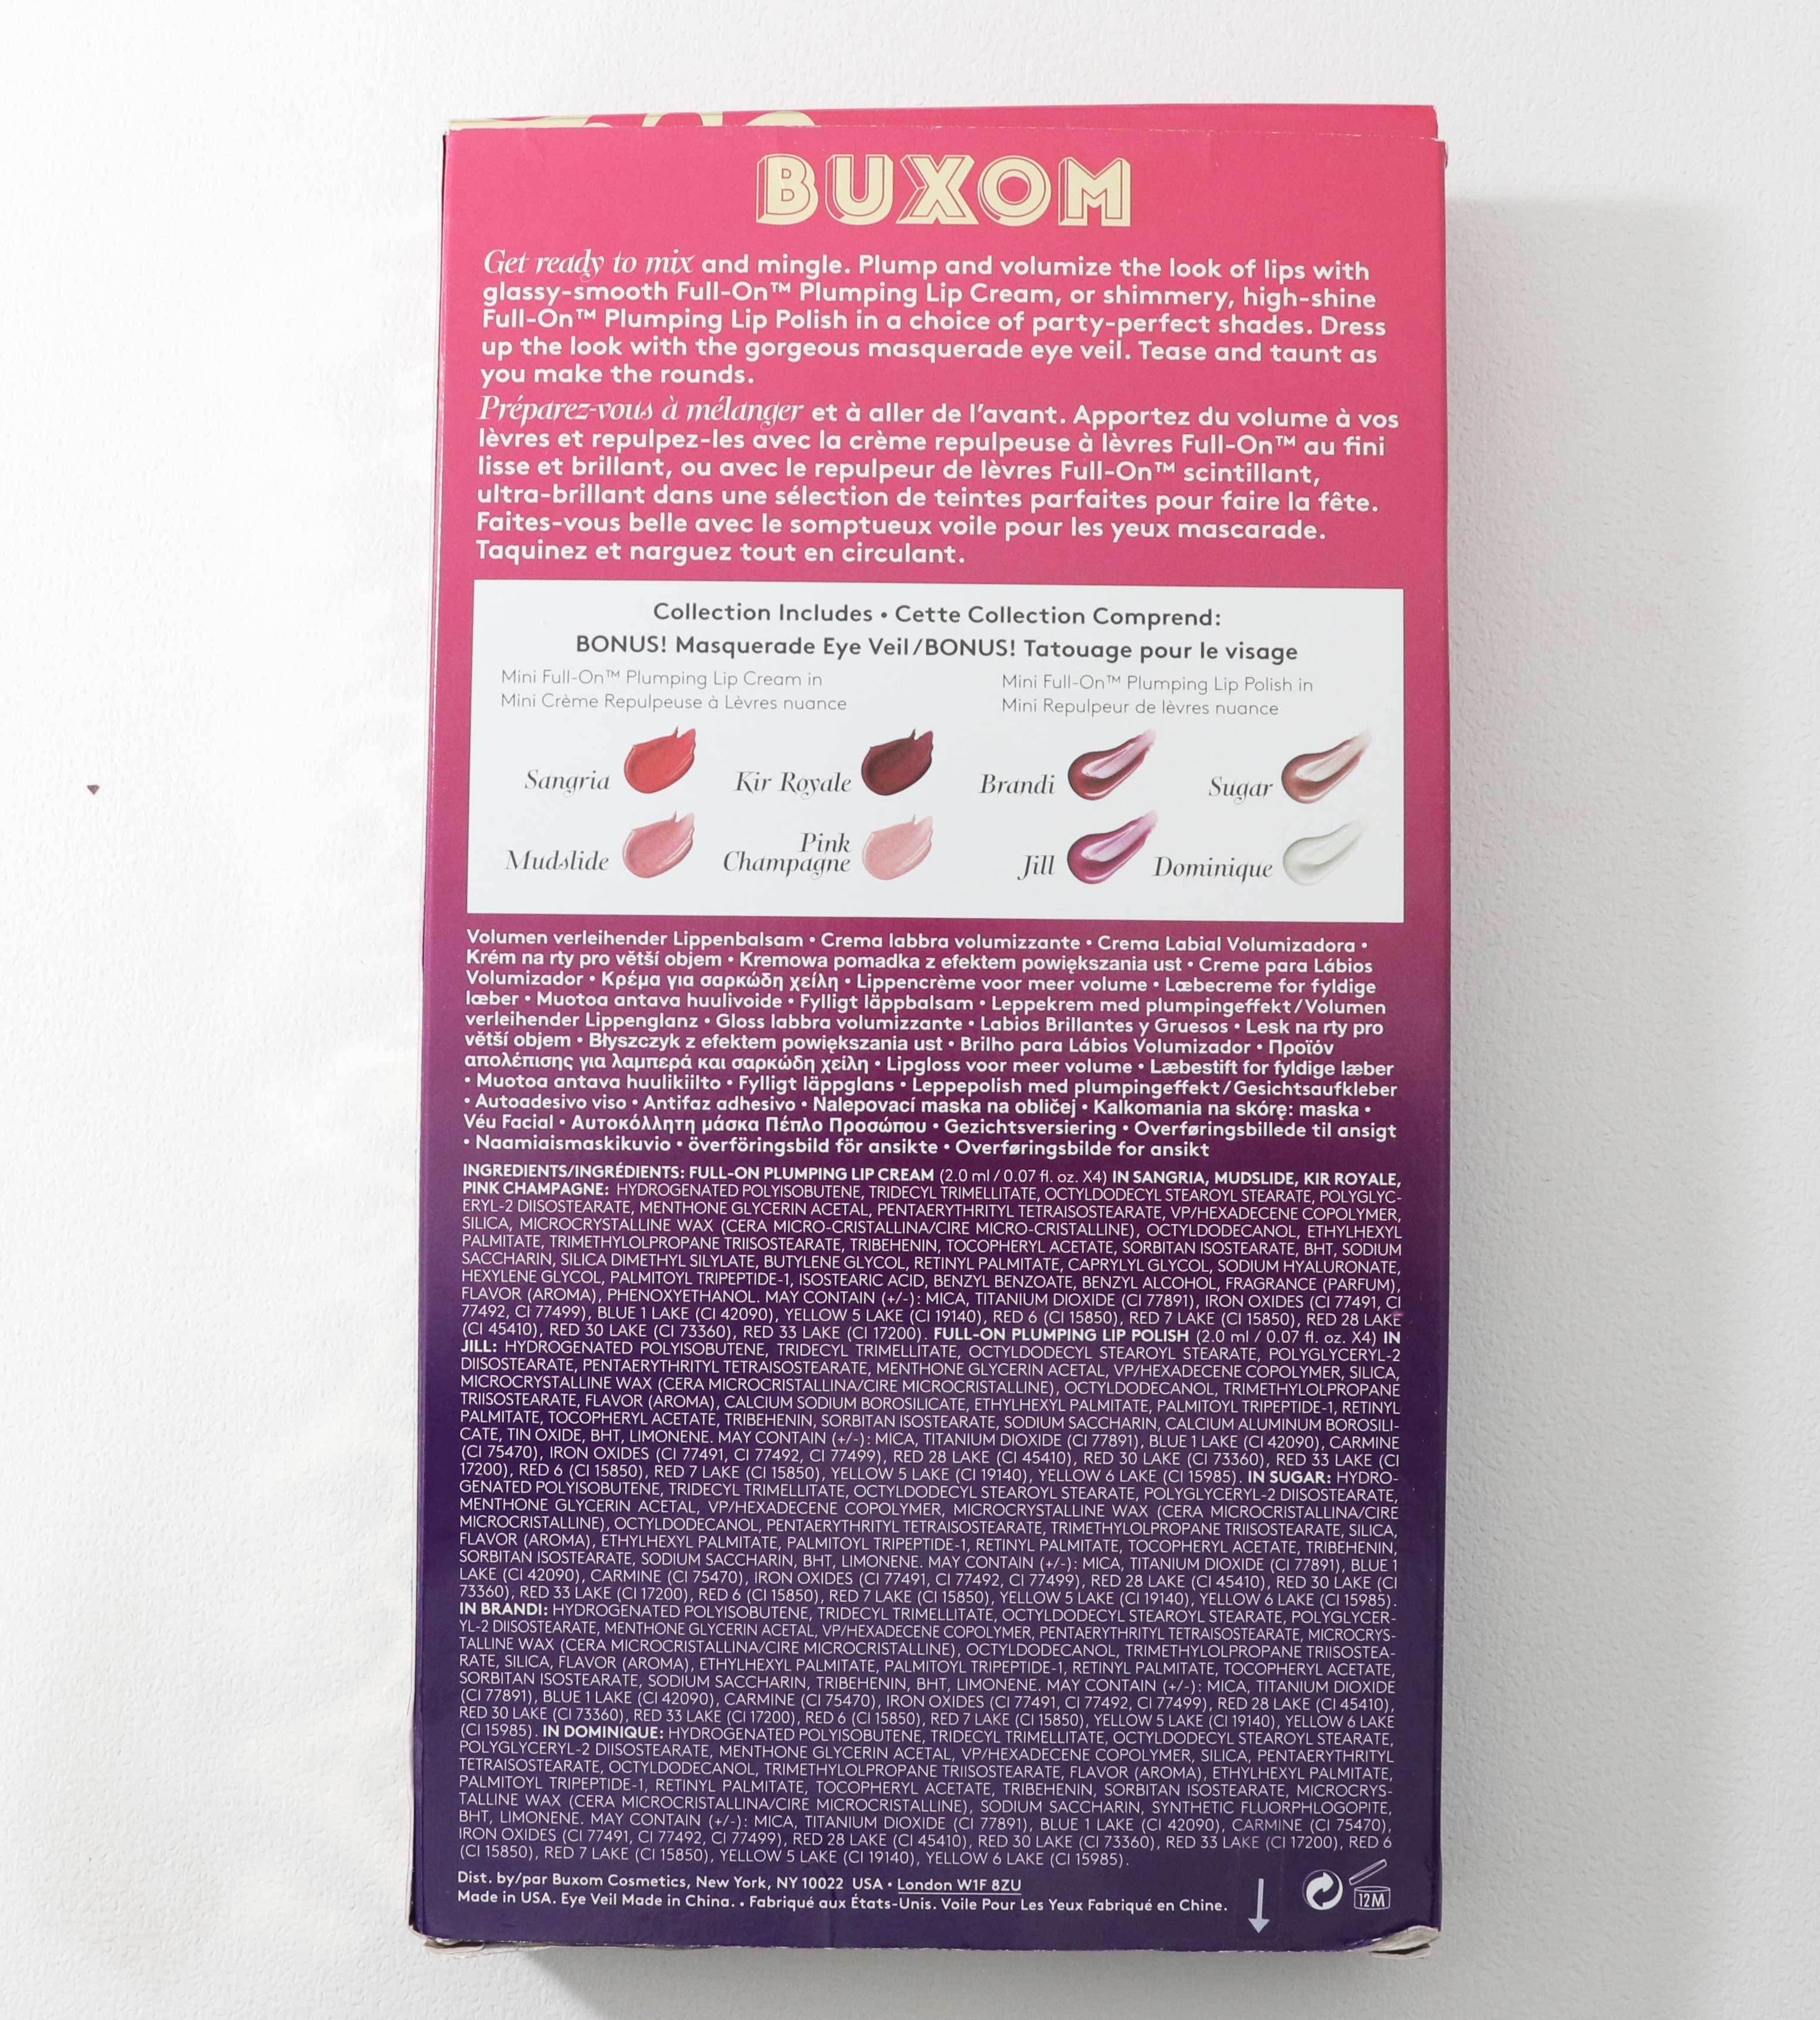 Buxom Full On Fantasy Lip Plumping Kit